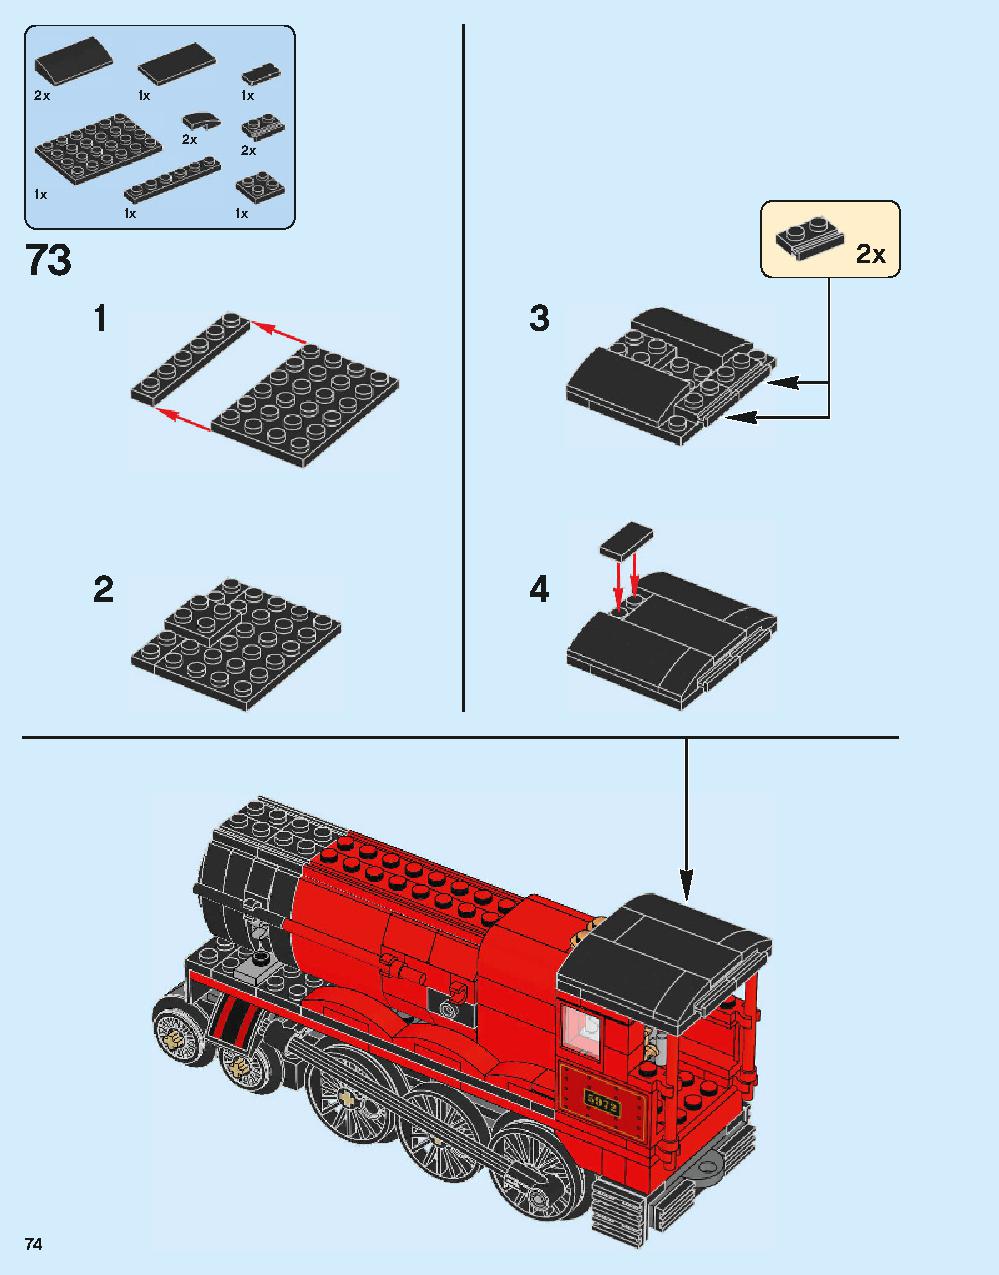 ホグワーツ特急 75955 レゴの商品情報 レゴの説明書・組立方法 74 page